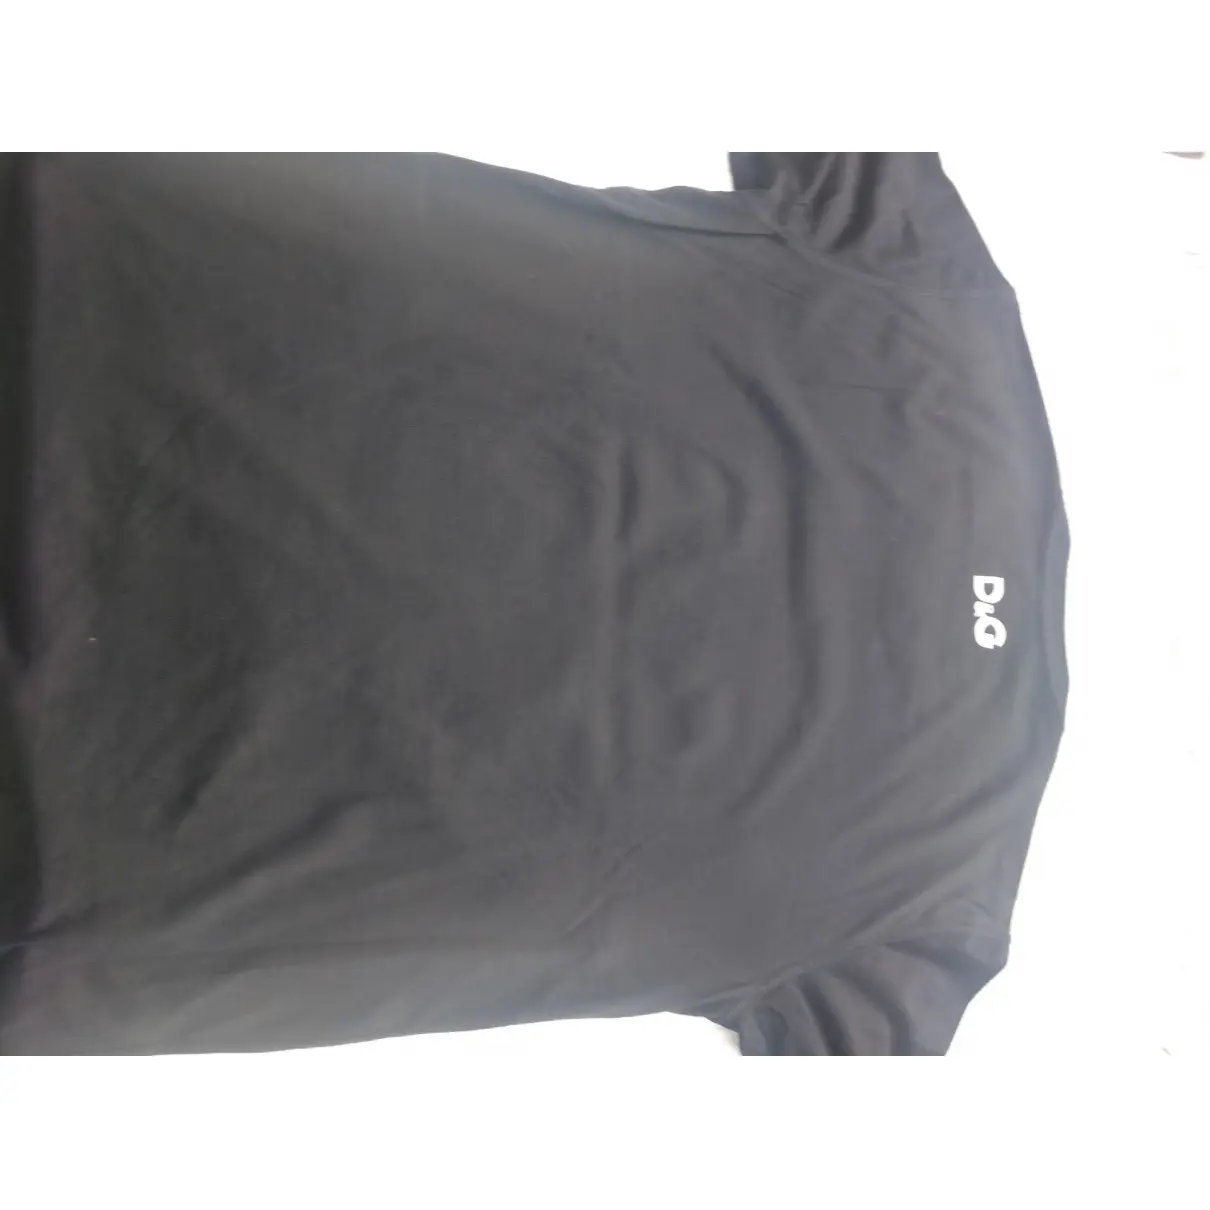 Buy D&G Black Cotton T-shirt online